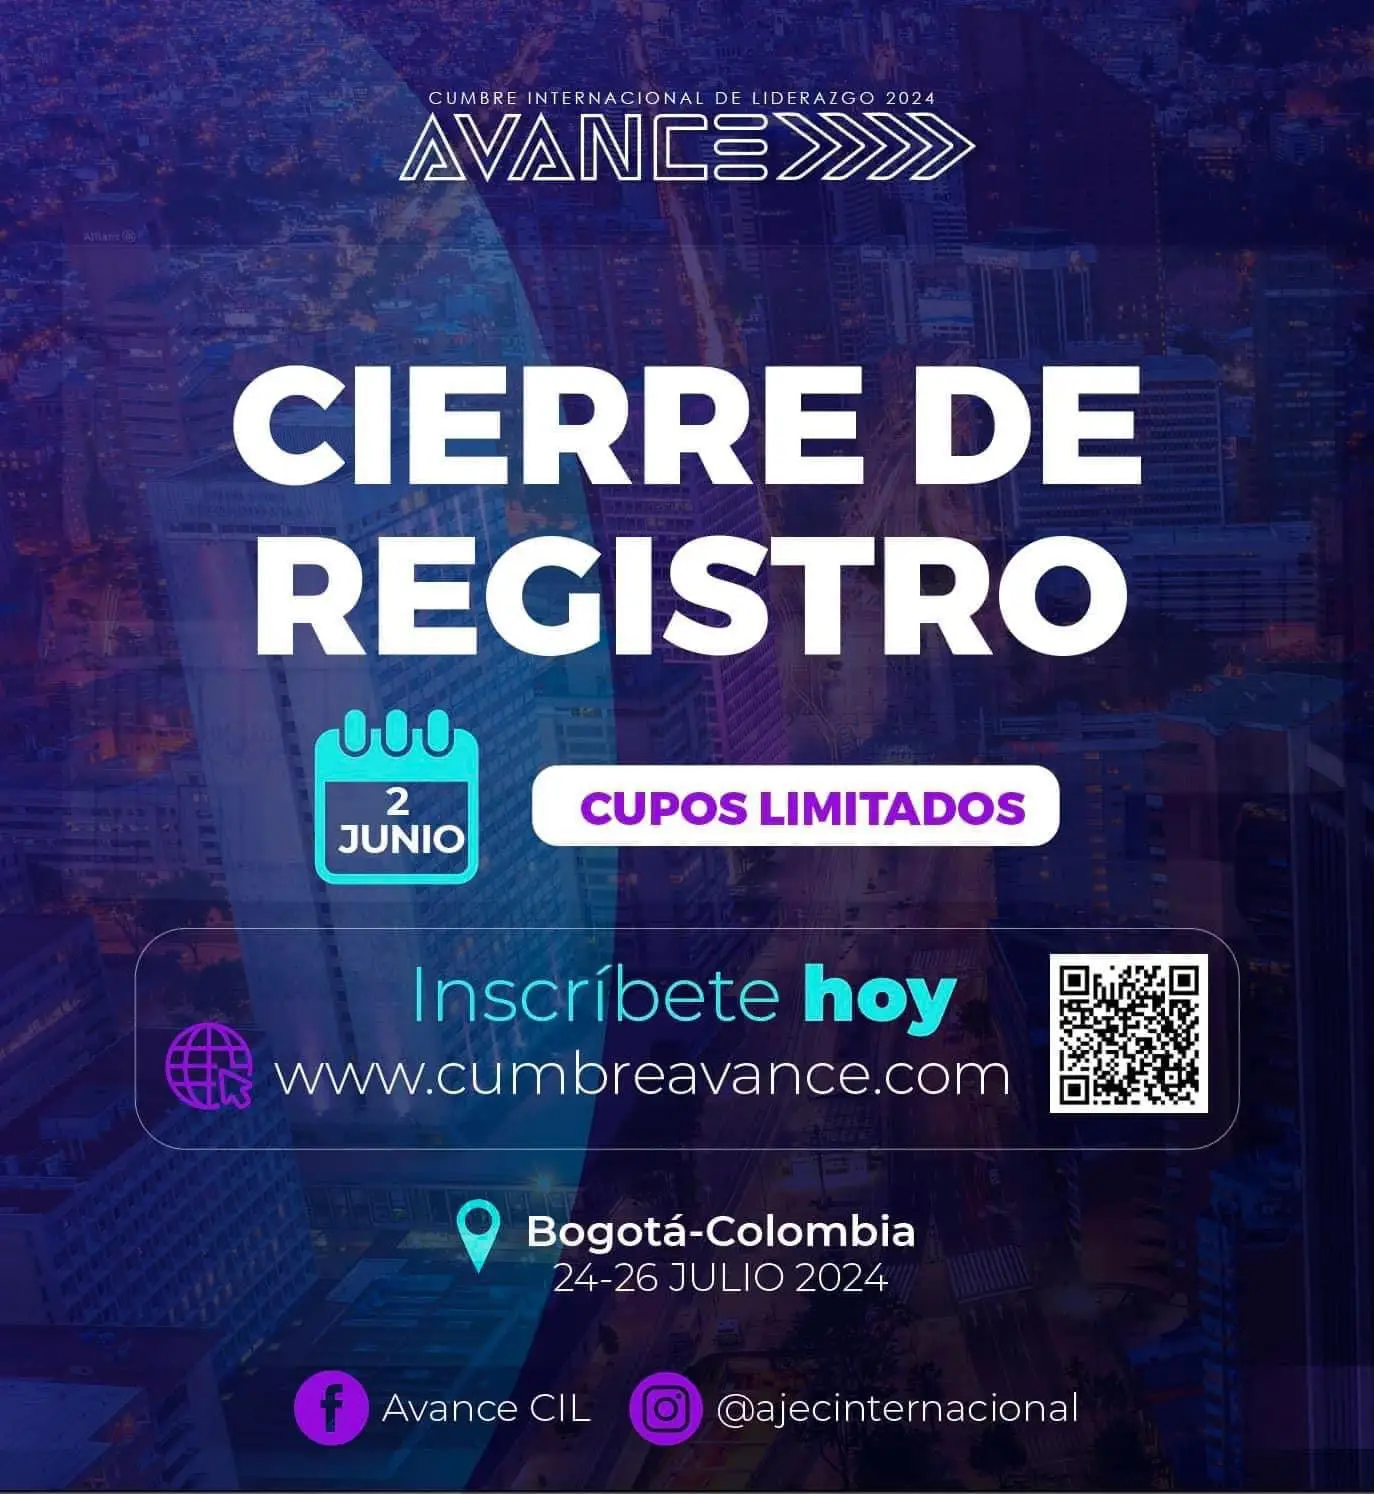 CIERRE REGISTRO Inscríbete hoy: www.cumbreavance.com